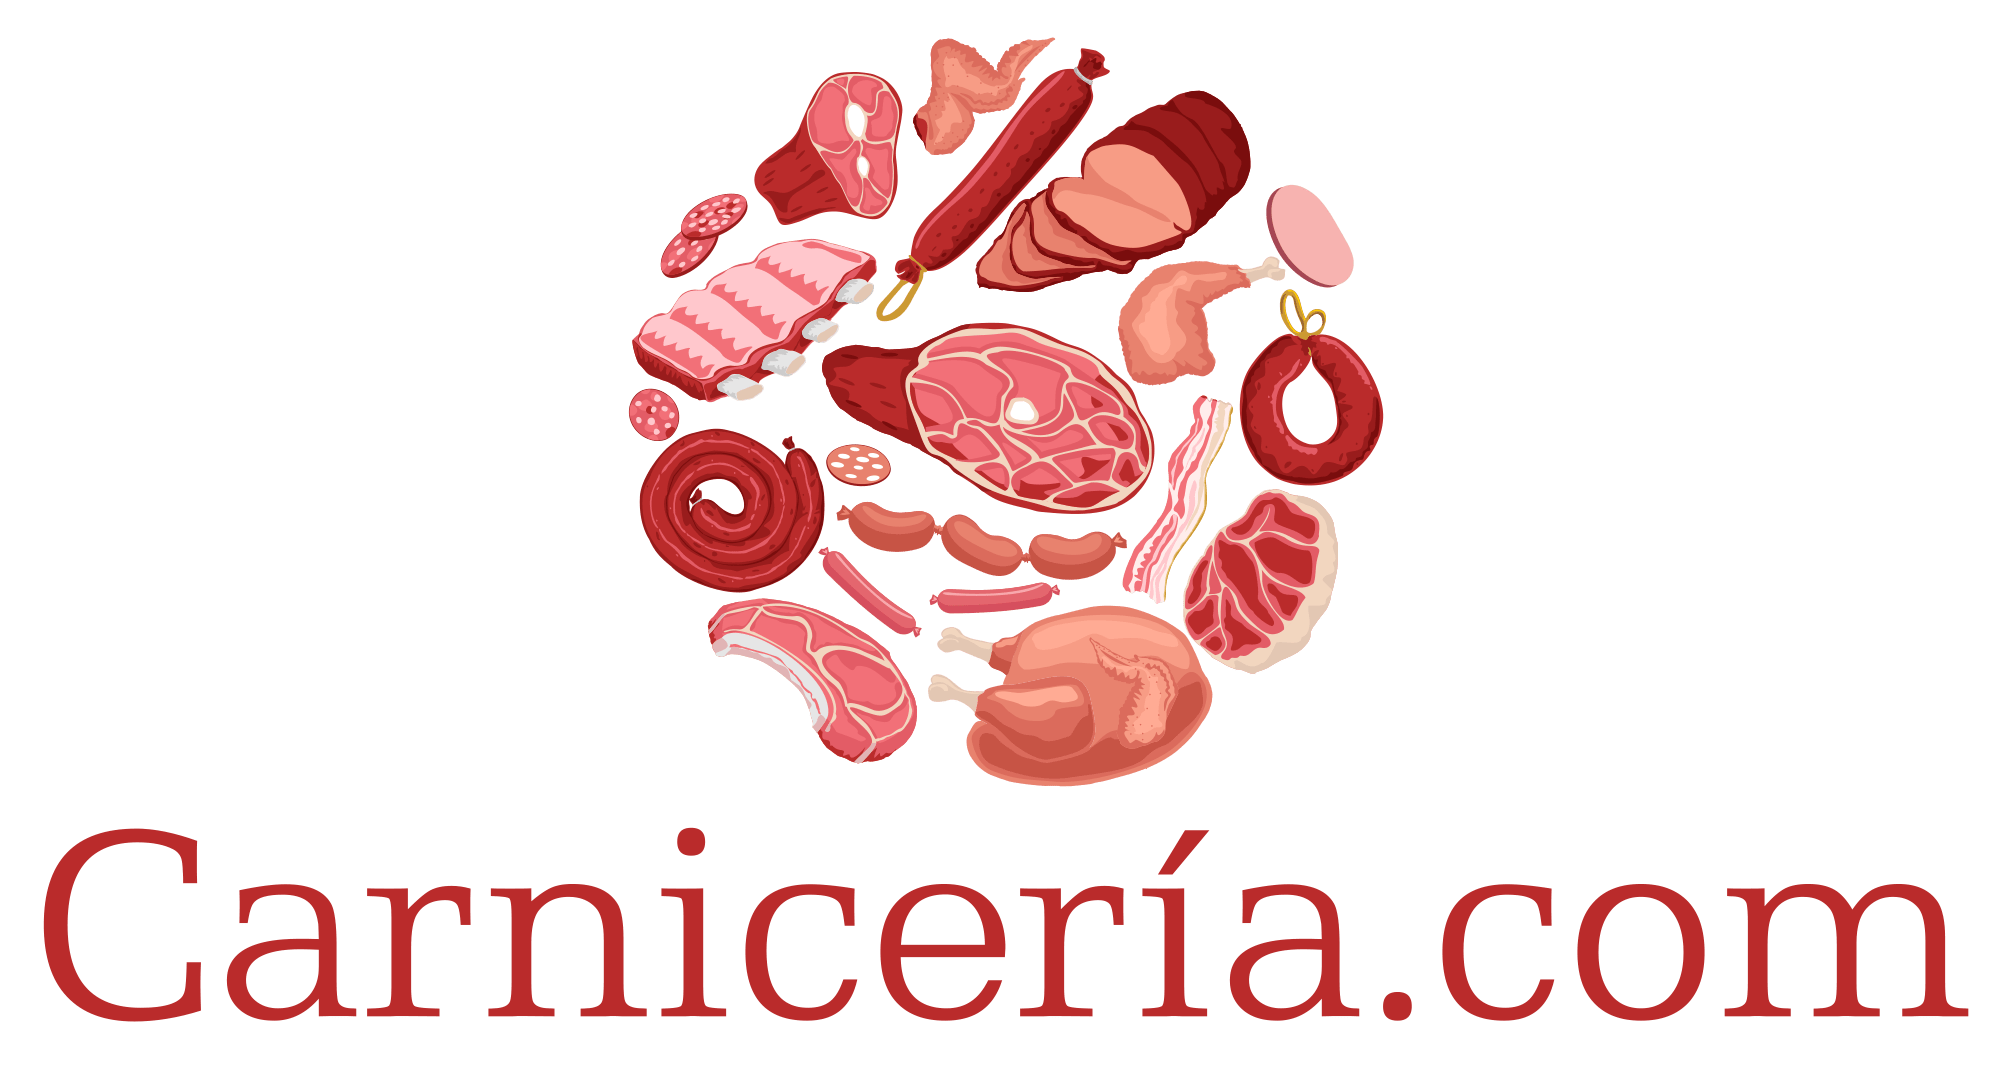 Carnicería de alta calidad y carnicería ecológica